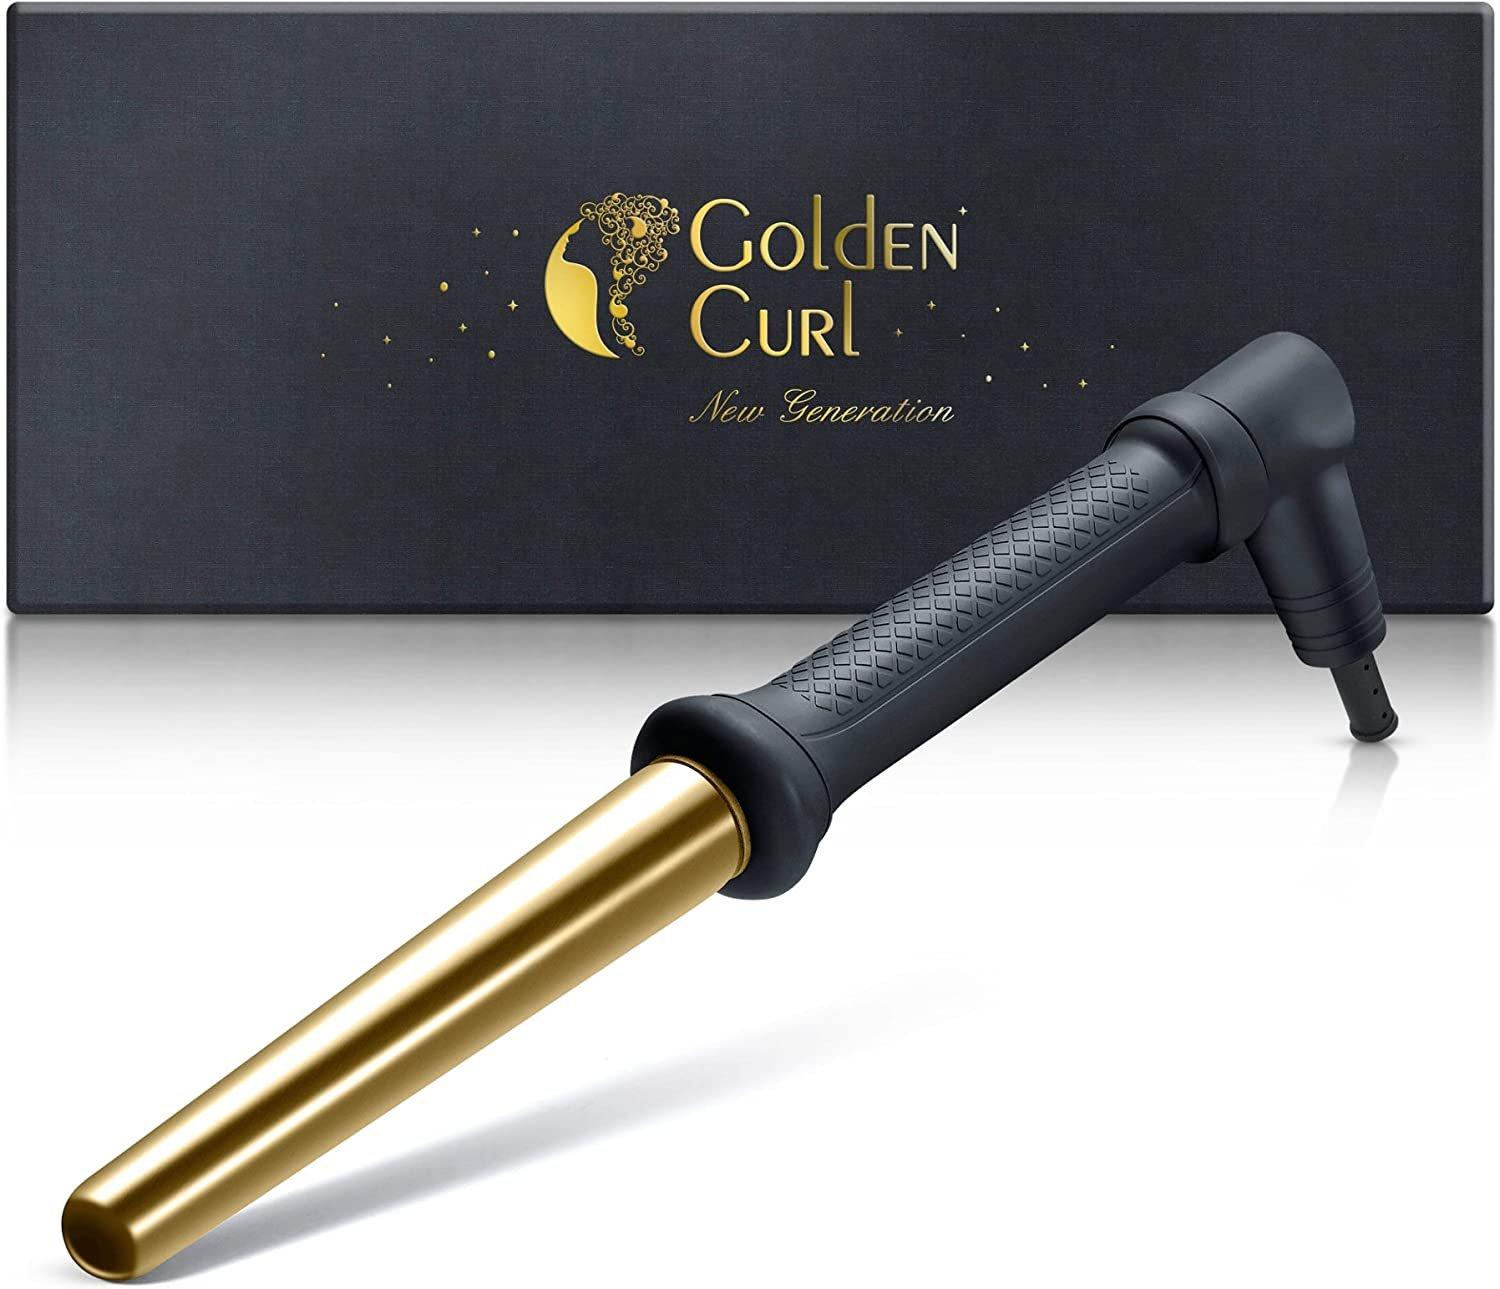 Golden Curl GC 506 Gold Curler  